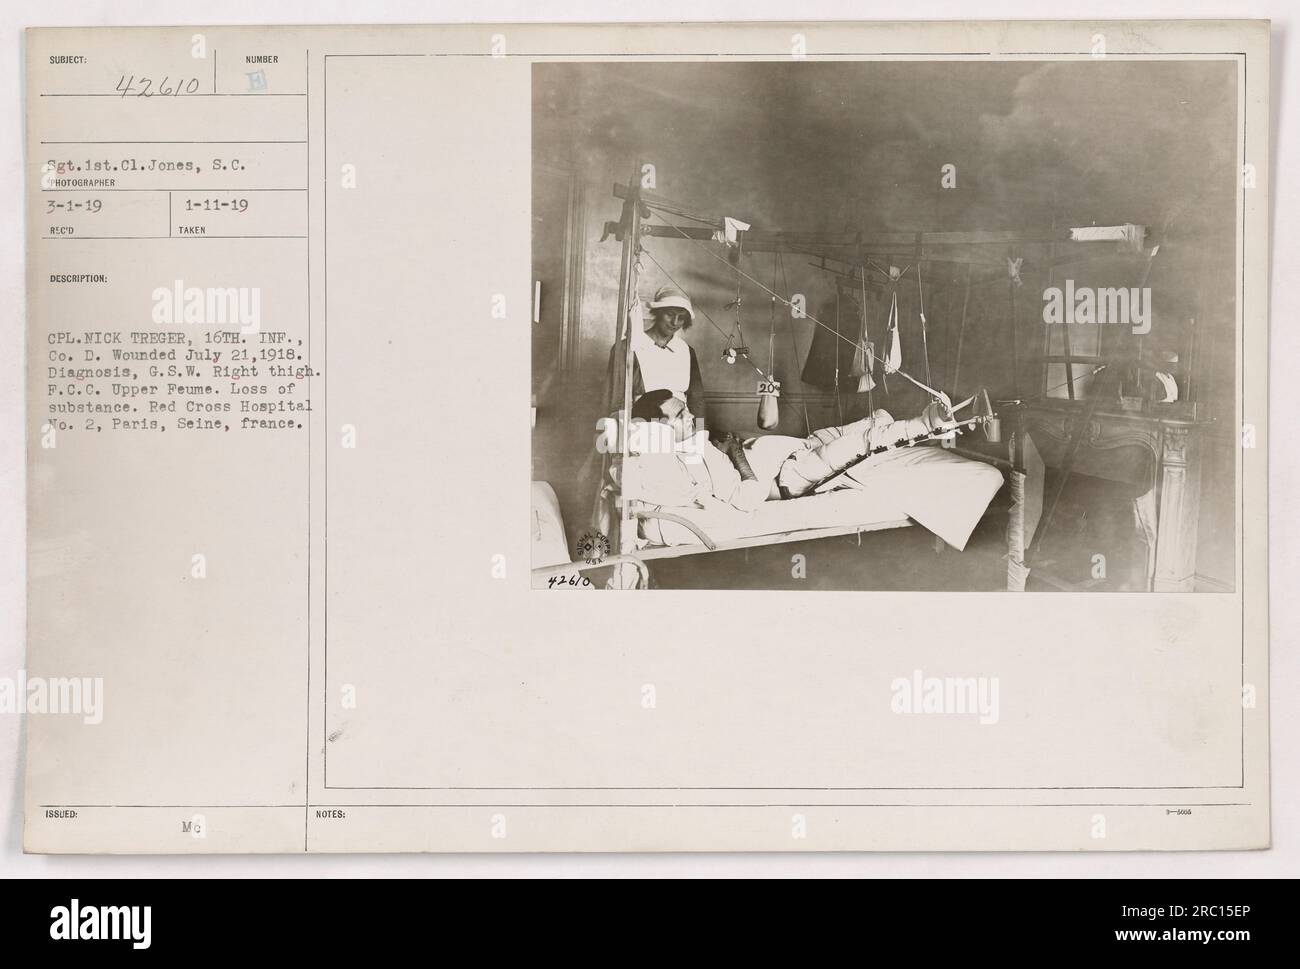 Amerikanischer Soldat Sgt. Jones besucht verwundeten Soldaten CPL. Treger im Red Cross Hospital Nr. 2 in Paris, Frankreich. CPL. Treger wurde am 21. Juli 1918 verwundet, mit einer Schusswunde am rechten Oberschenkel, die zum Verlust von Fleisch führte. Das Foto wurde am 1. März 1919 von dem Fotografen CPL aufgenommen. Nick Treger von der 16. Infanterie, Co. D. Stockfoto